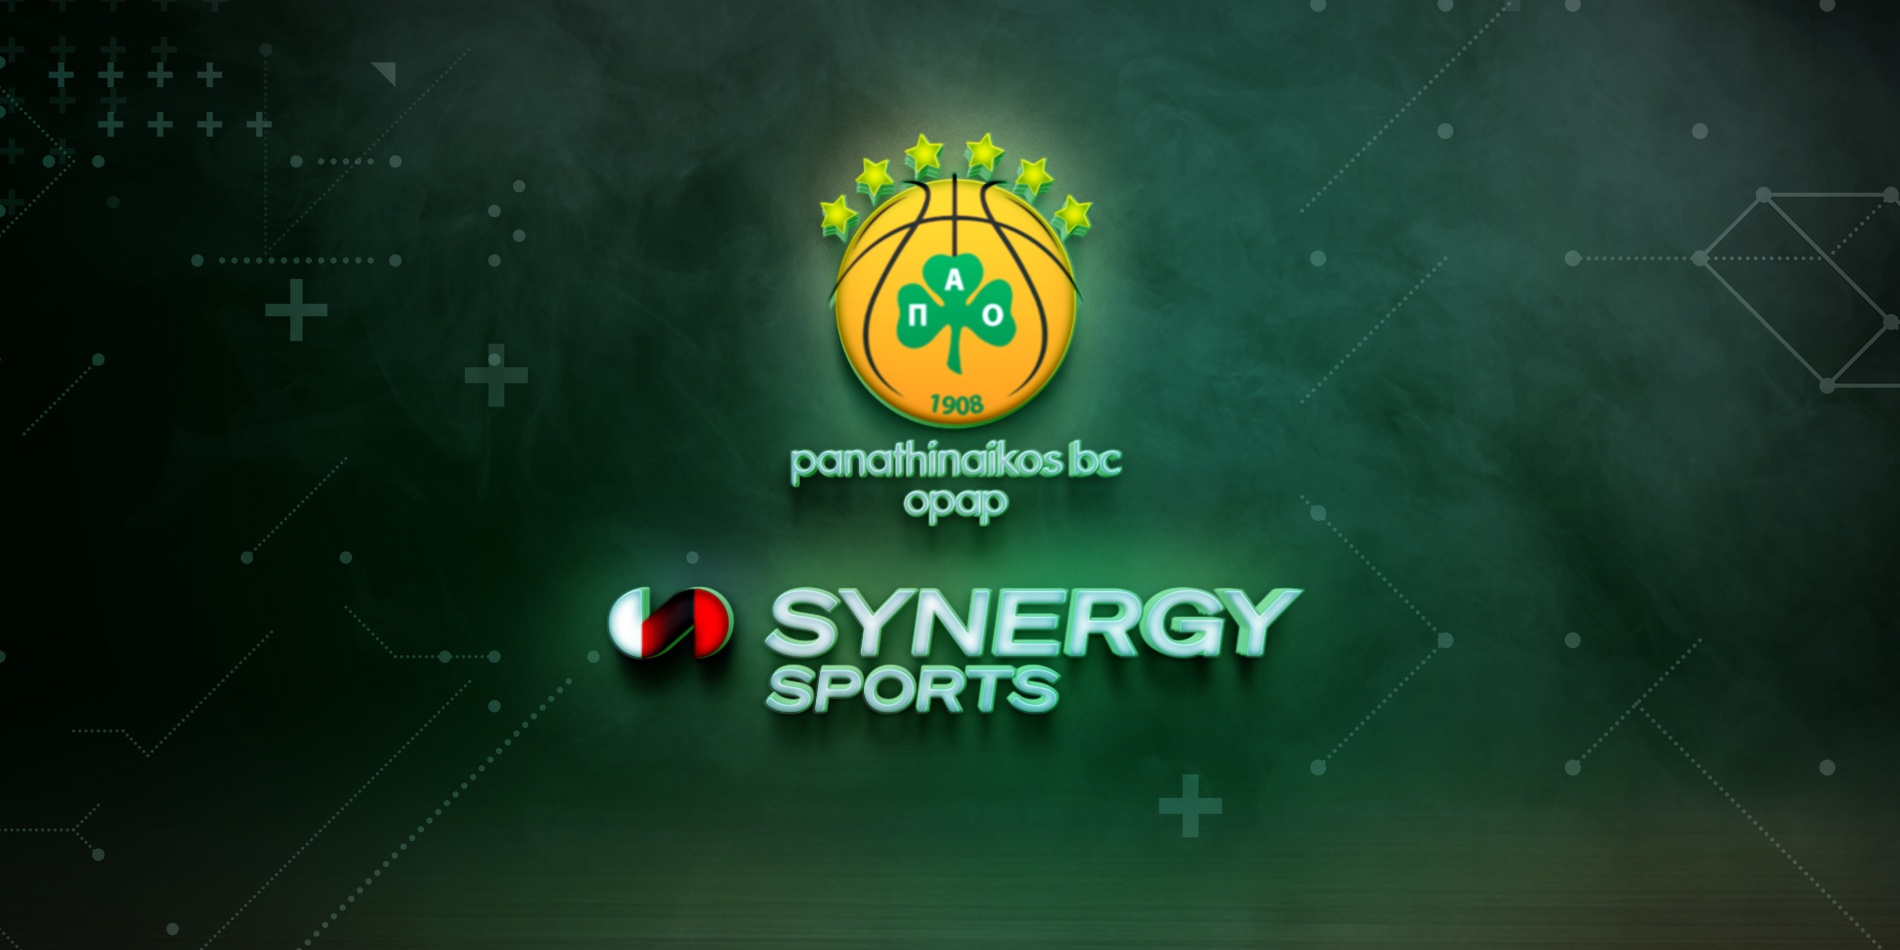 Η πρωτοποριακή συνεργασία του Παναθηναϊκού με την Synergy Sports